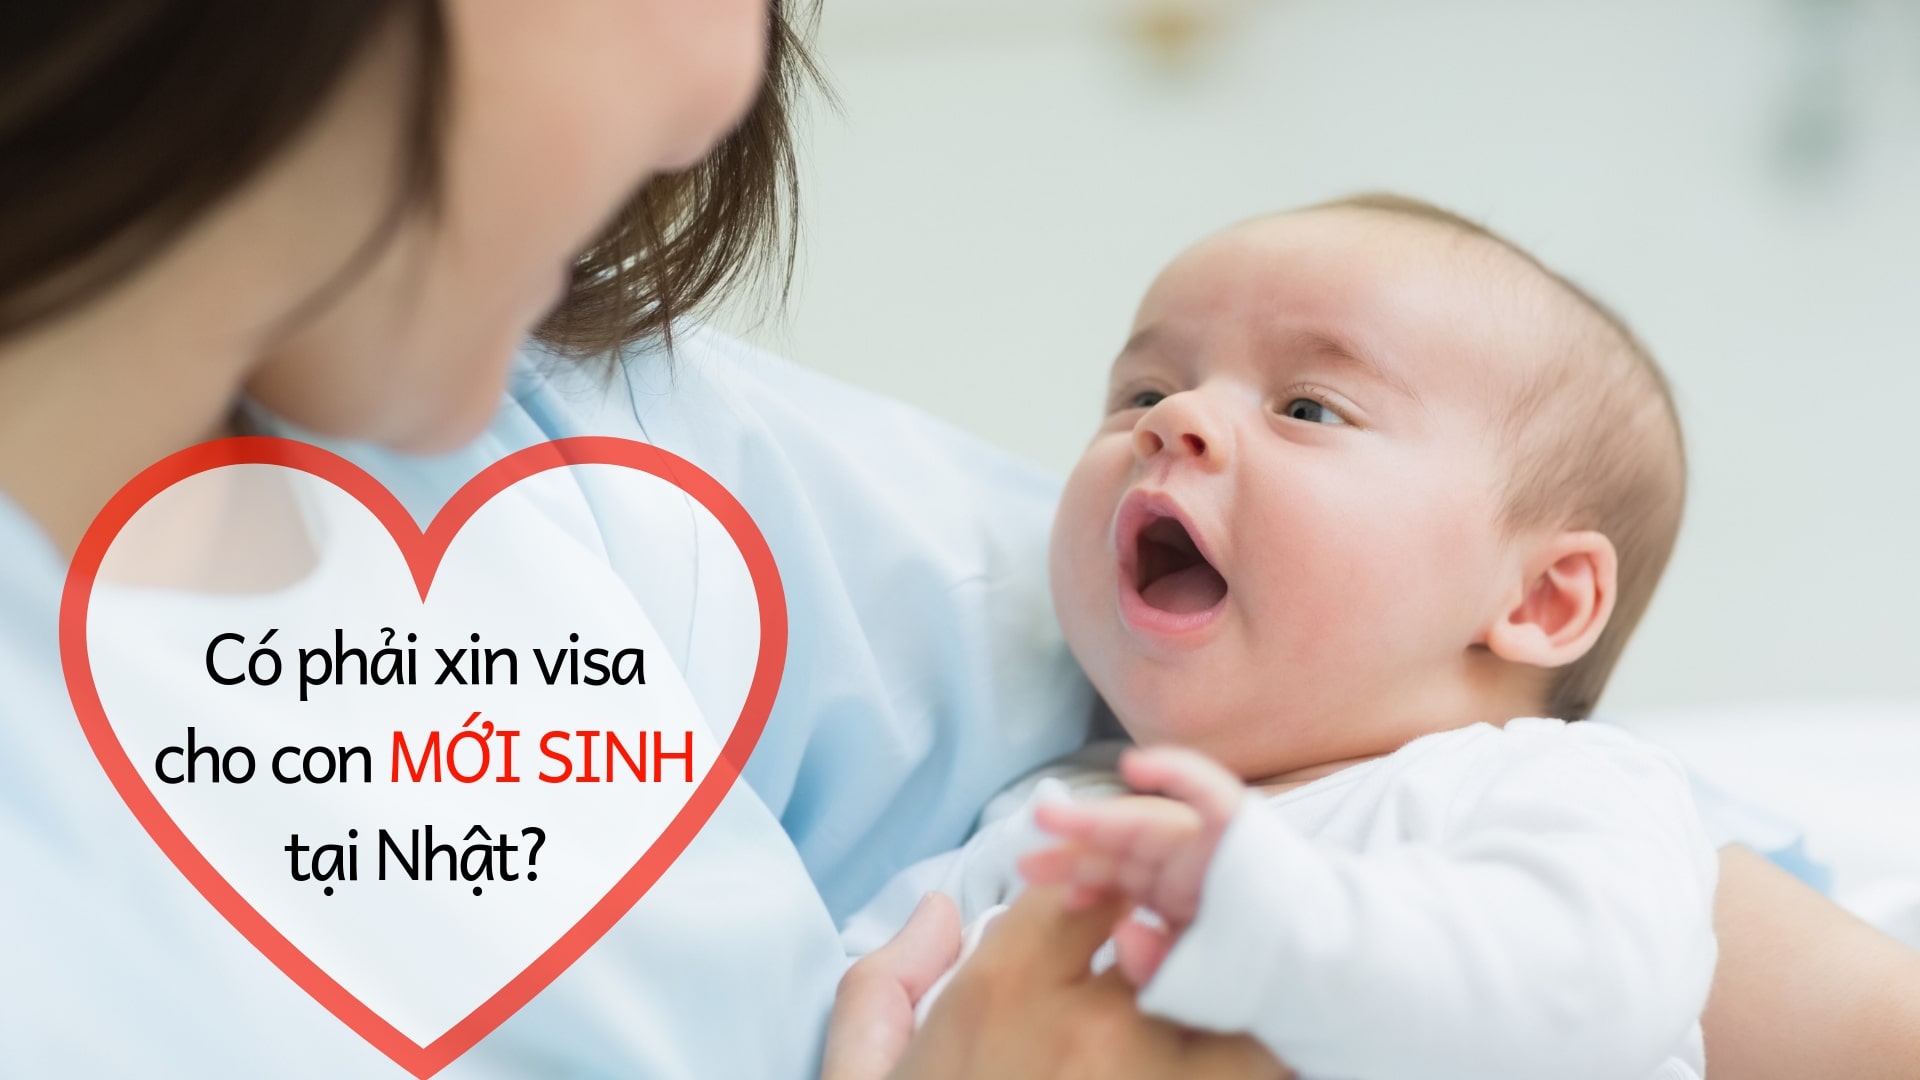 Hướng dẫn CHI TIẾT thủ tục xin visa cho con sinh ra ở Nhật